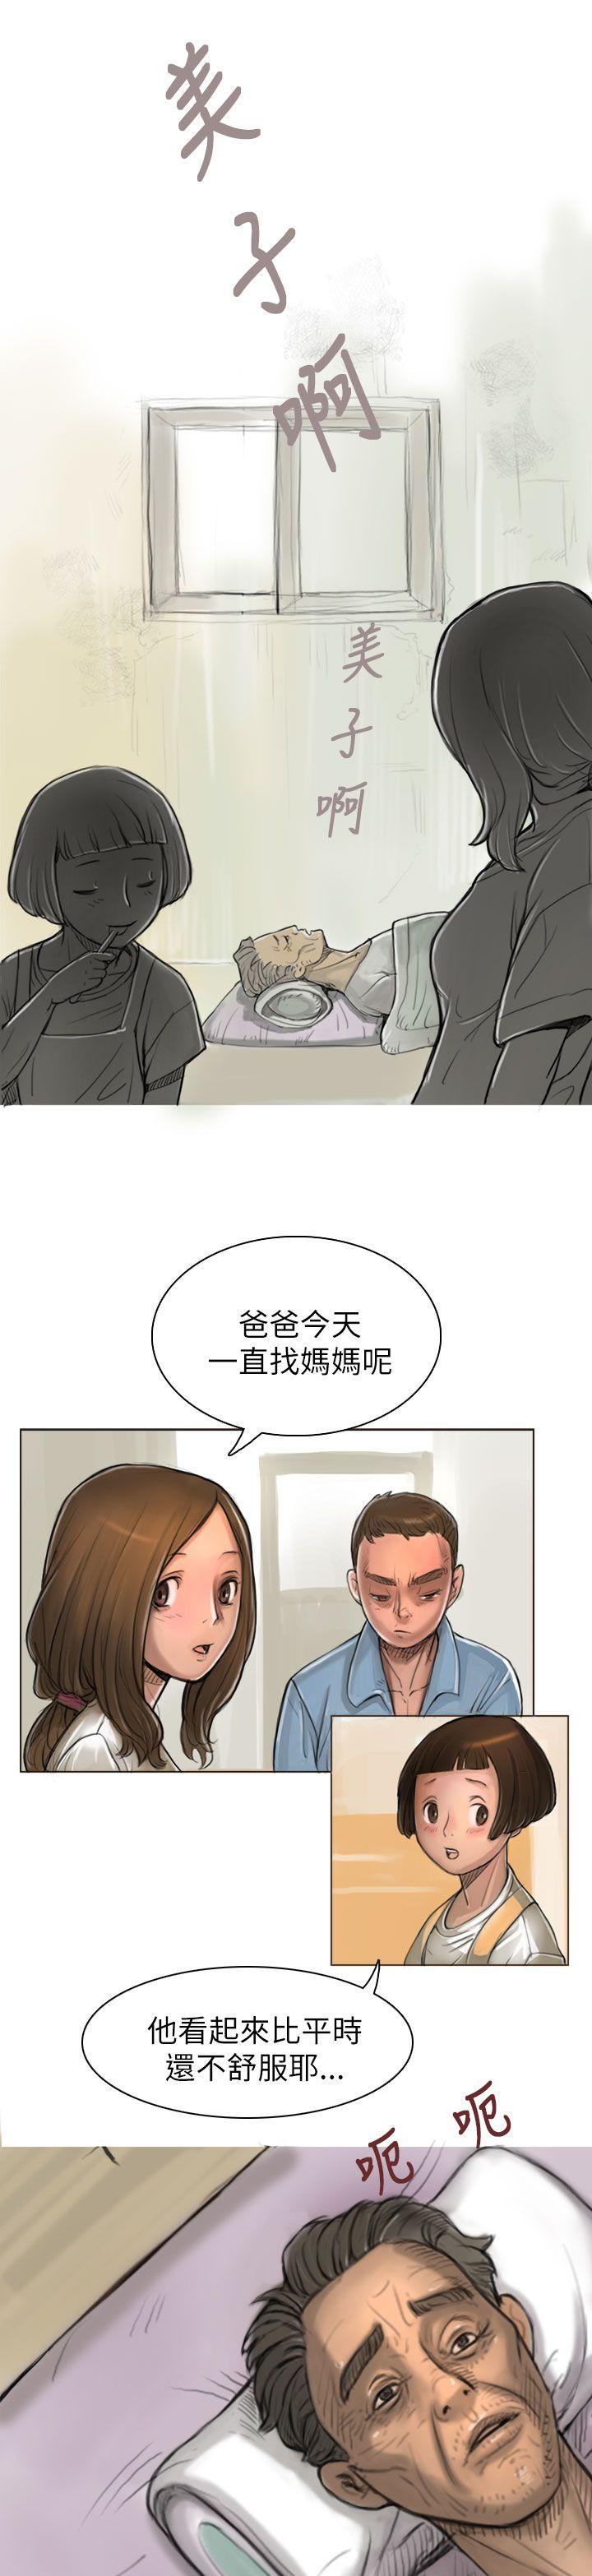 韩国污漫画 姊姊: 蓮 第1话 39